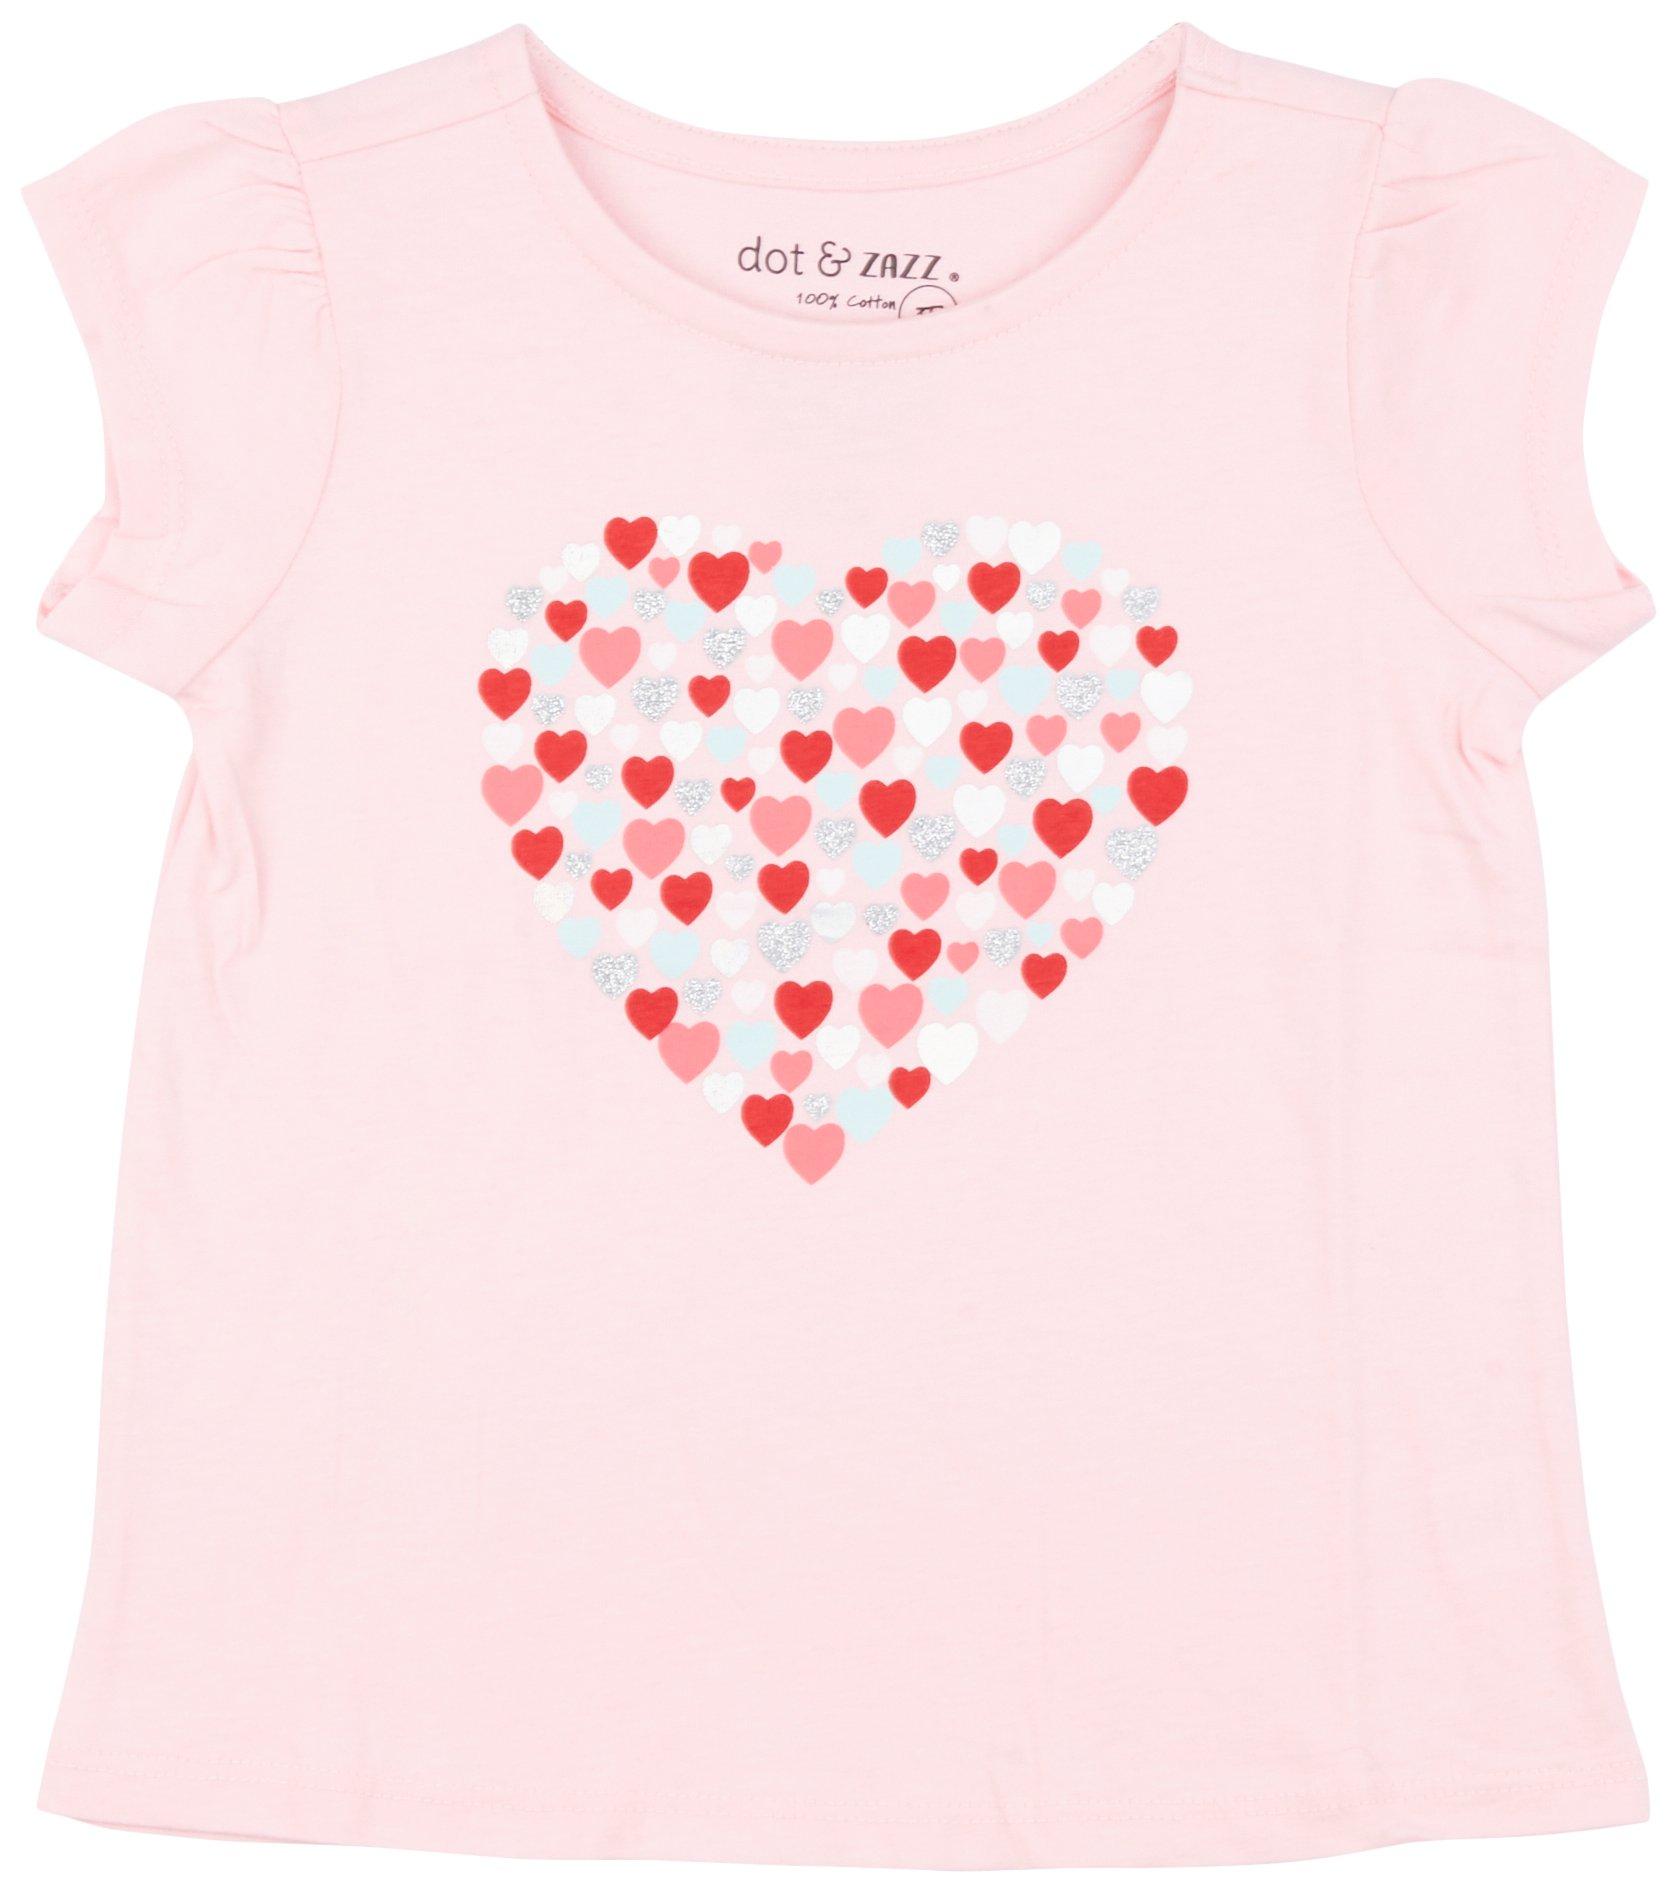 DOT & ZAZZ Toddler Girls Heart Short SleeveTop